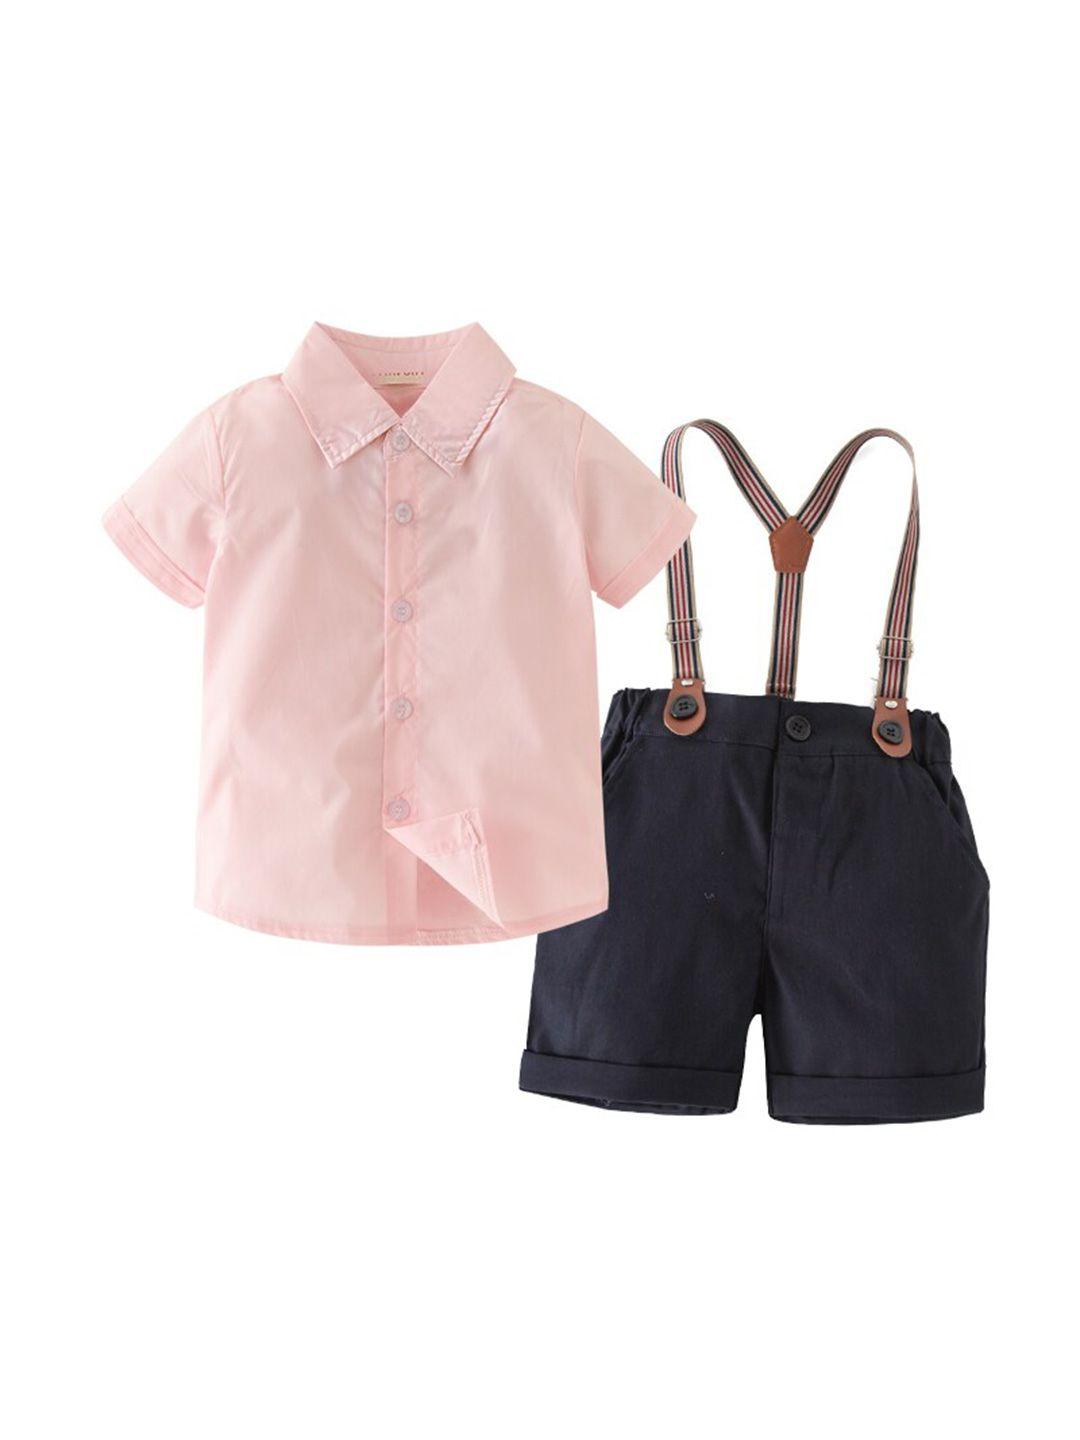 StyleCast Boys Pink Shirt With Shorts Clothing Set